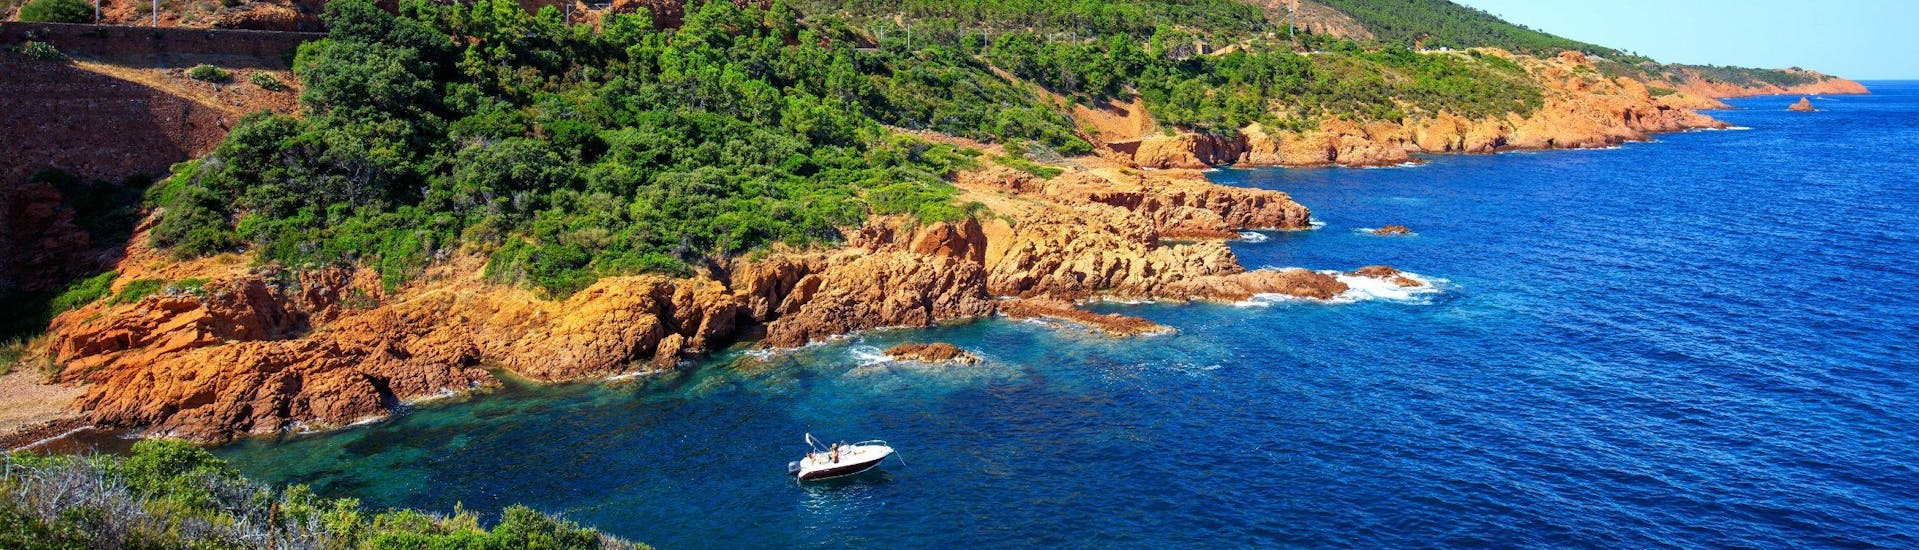 Ein Boot fährt entlang der Küsten des Naturparks L'Estérel, der ein beliebtes Ziel für Bootstouren von Cannes aus ist.